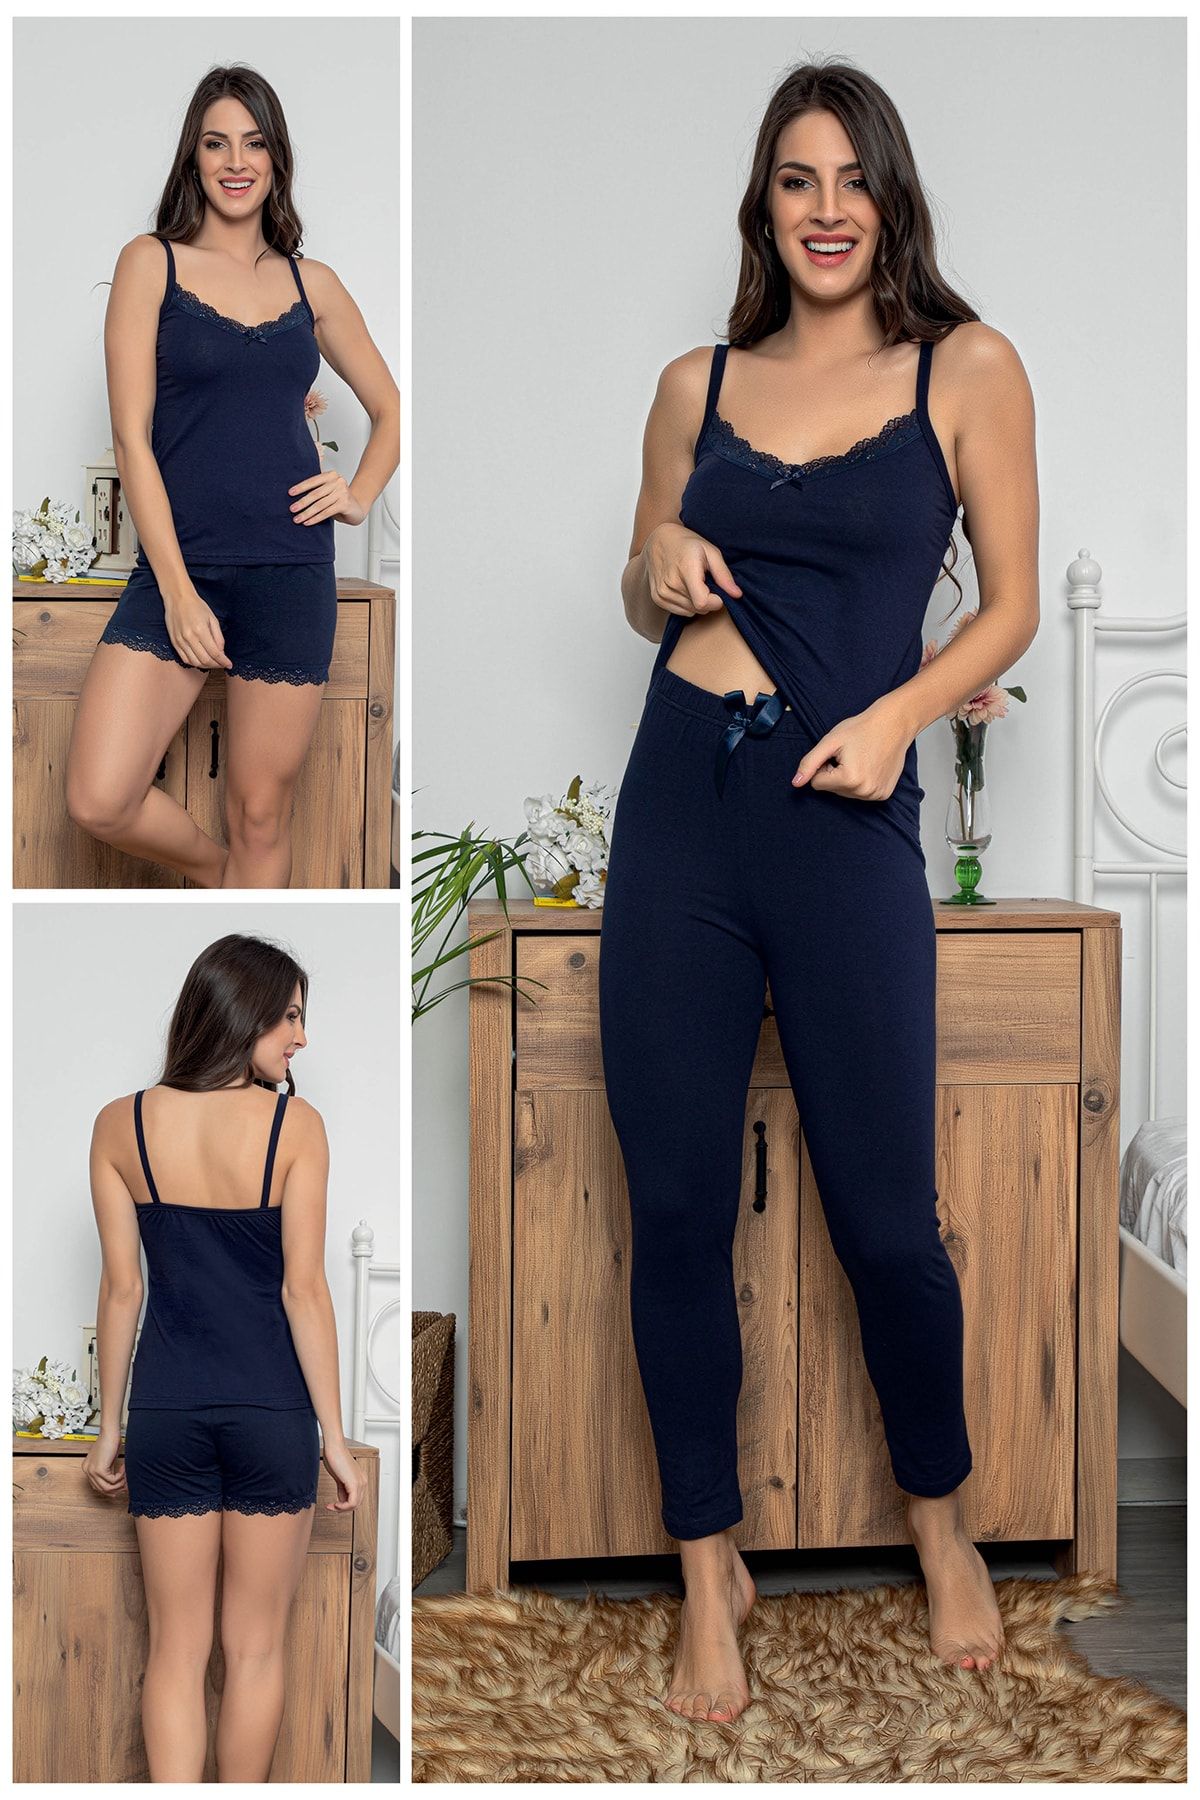 MyBen Kadın Lacivert Renkli Dantel Detaylı Şortlu Ve Taytlı Pijama Takımı 3'lü Set 75019